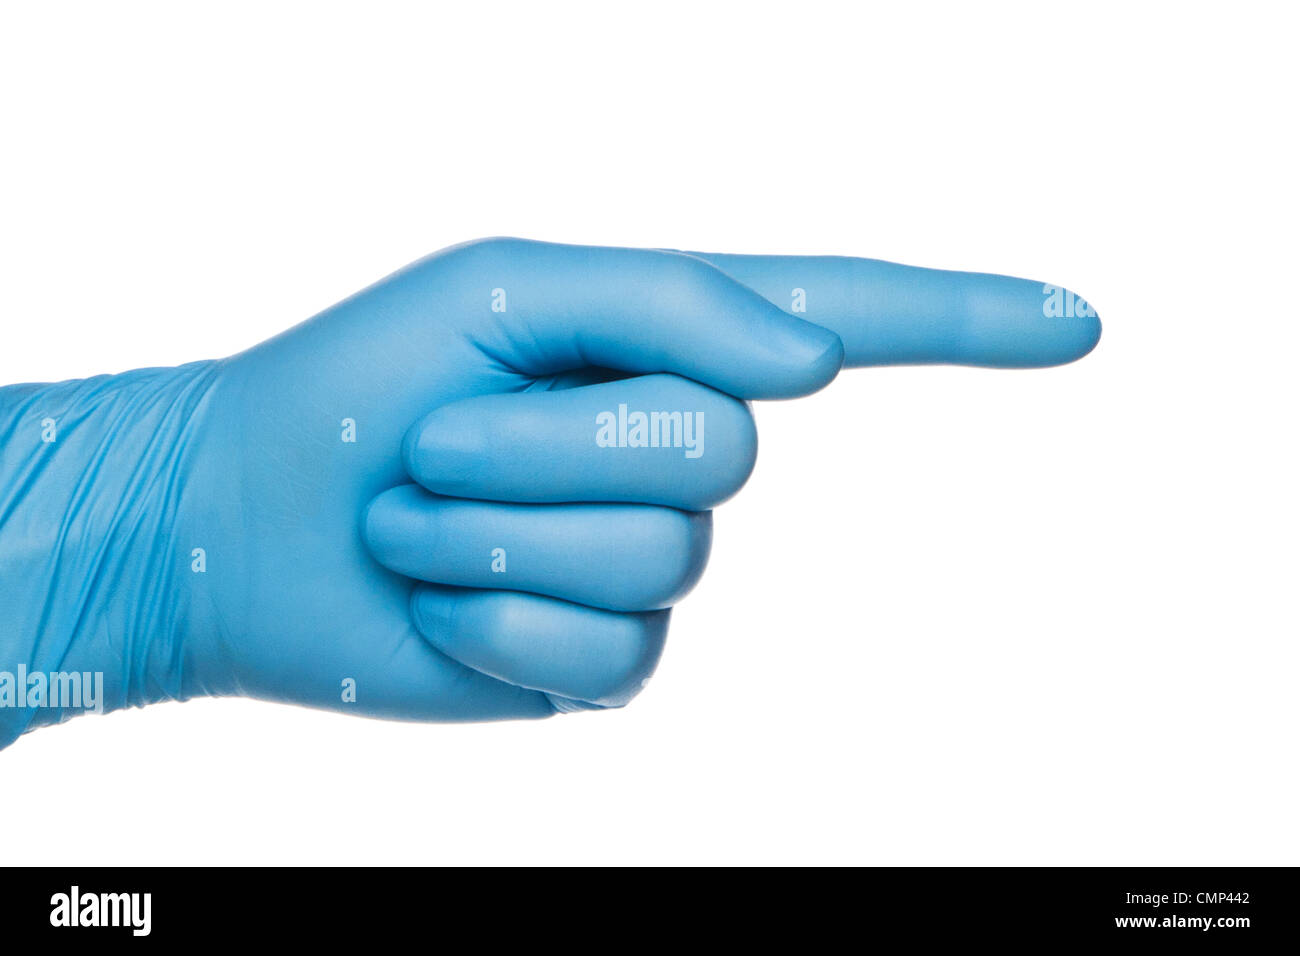 Nahaufnahme der blauen medizinischen Handschuh auf Seite, mit Zeigefinger  zeigt richtige Faust. Isoliert auf weiss Stockfotografie - Alamy